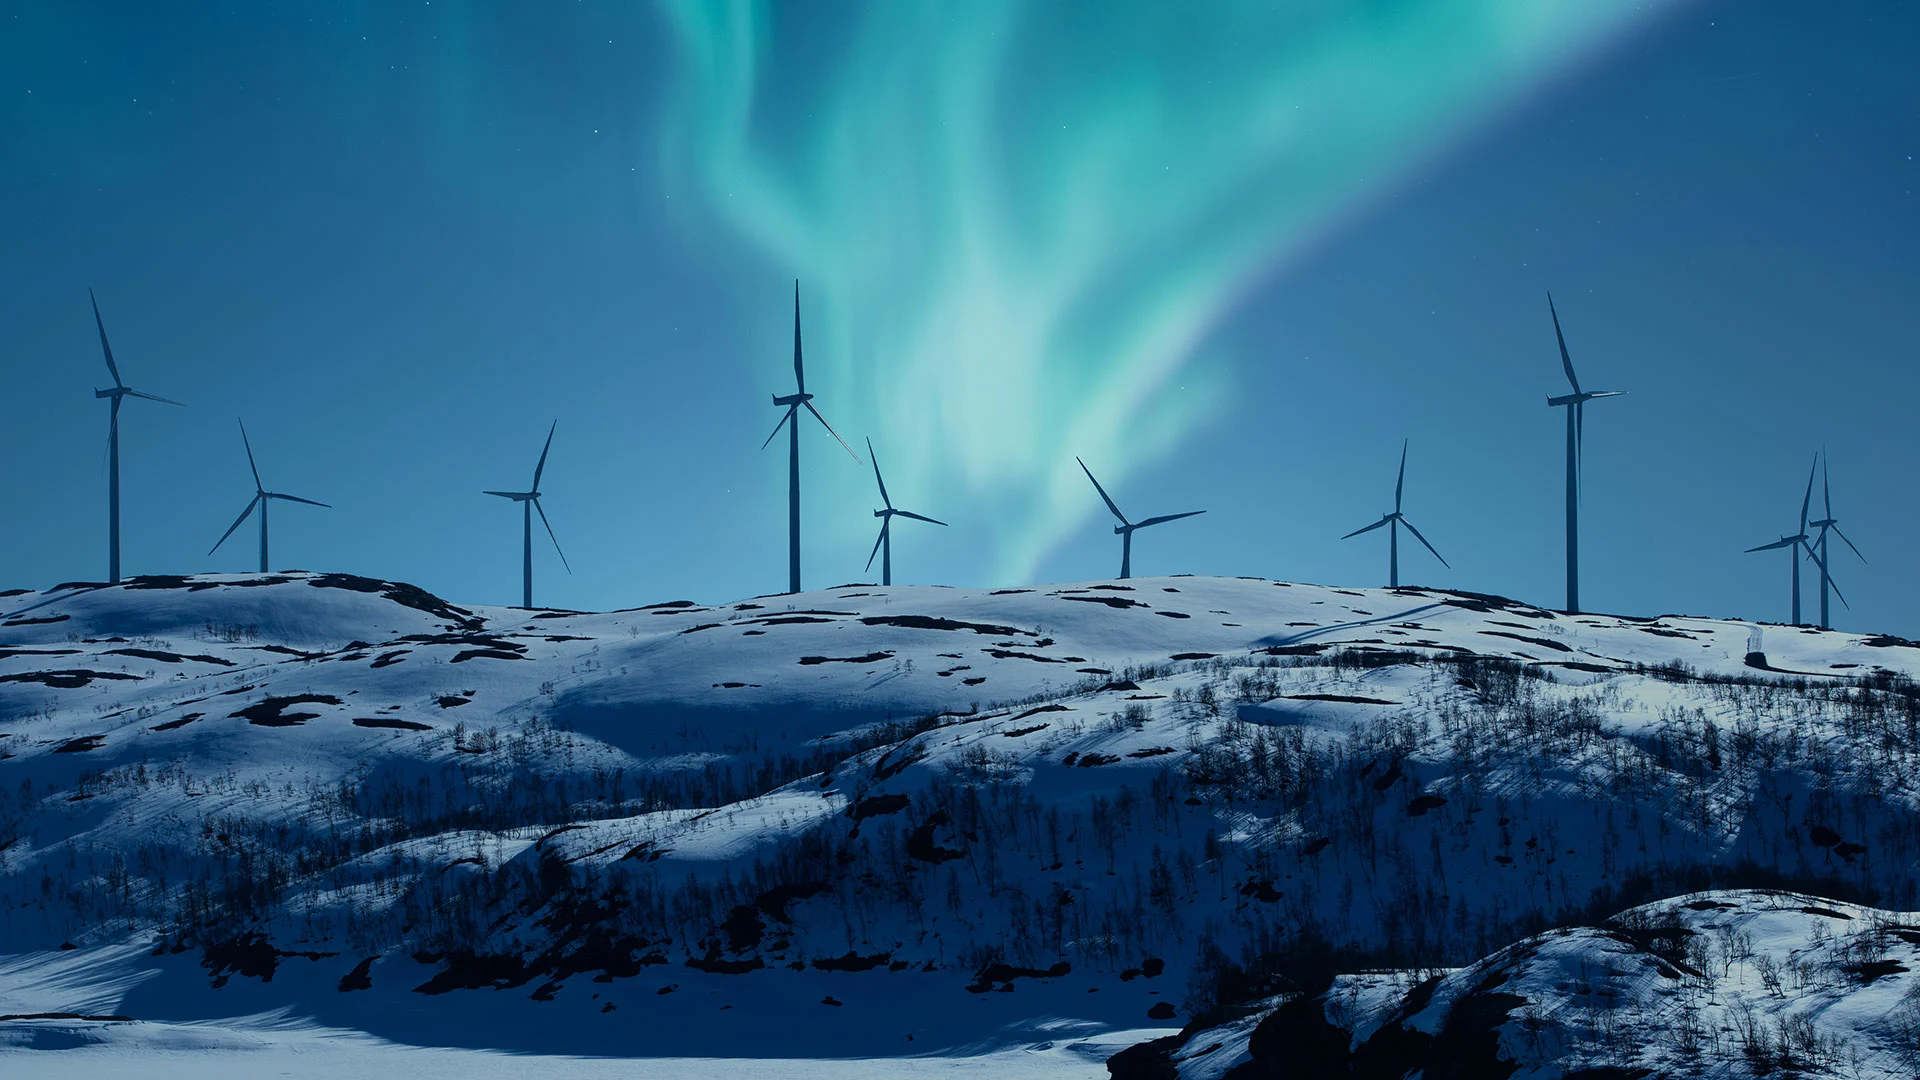 Kommt nach dem Crash der grüne Knall? So investieren Sie smart in Energieaktien wie Nordex und Co. (Foto: Jarmo Piironen/iStockphoto)